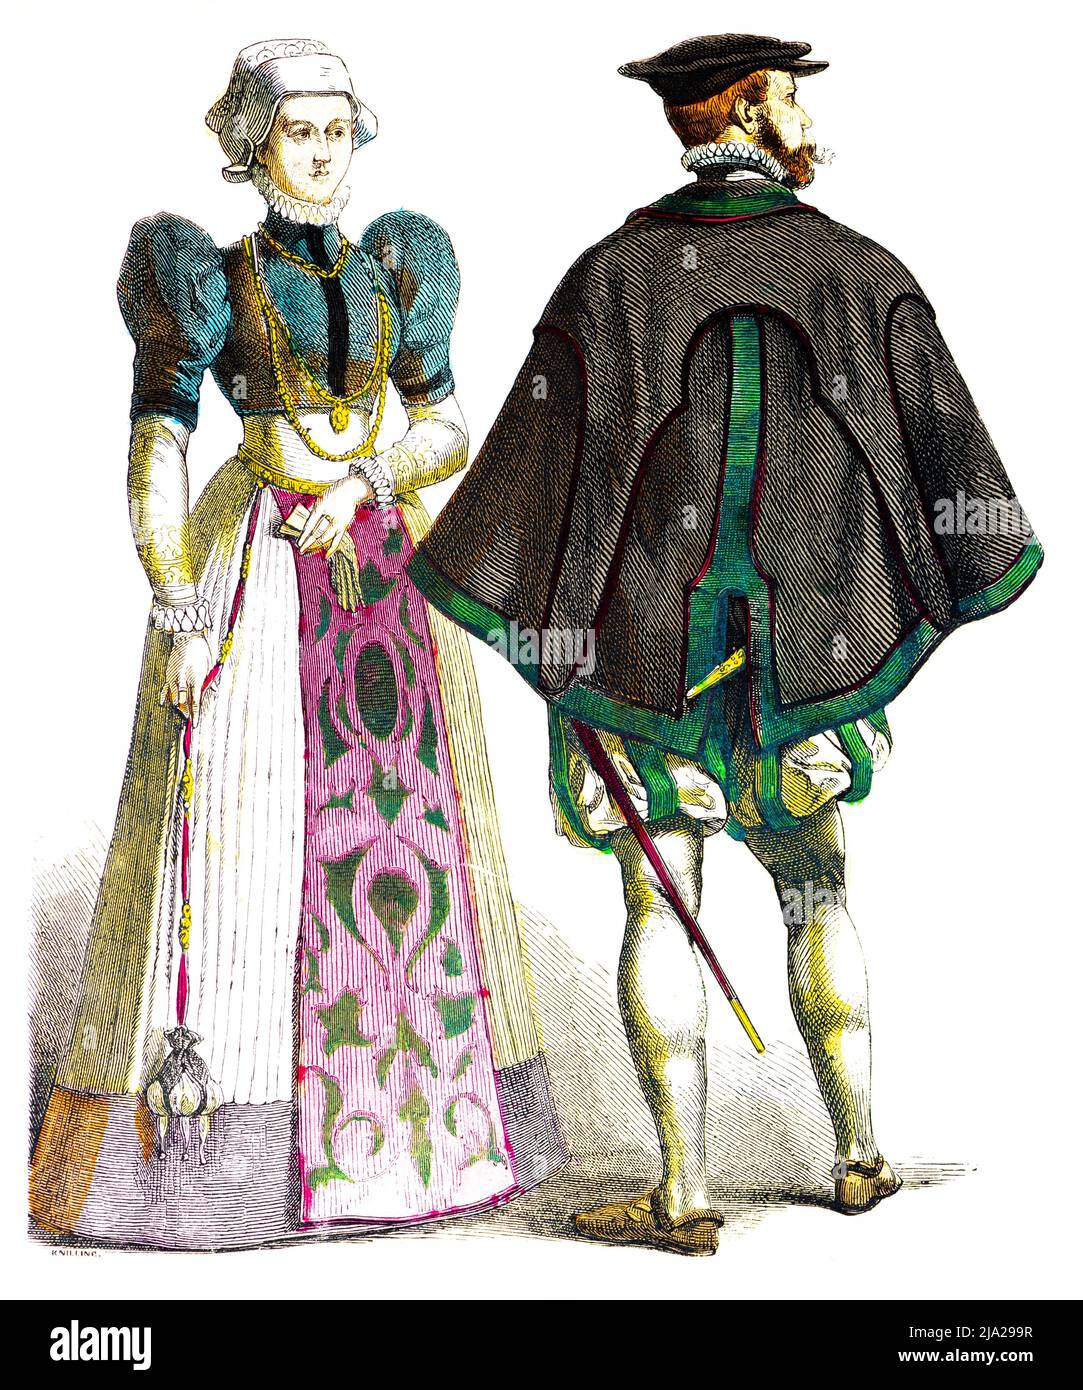 Muenchener Bilderbogen, costumes, fin du 16th siècle, costume traditionnel allemand, Allemagne, homme, épée, femme, bijoux, élégant, robe, portrait Banque D'Images